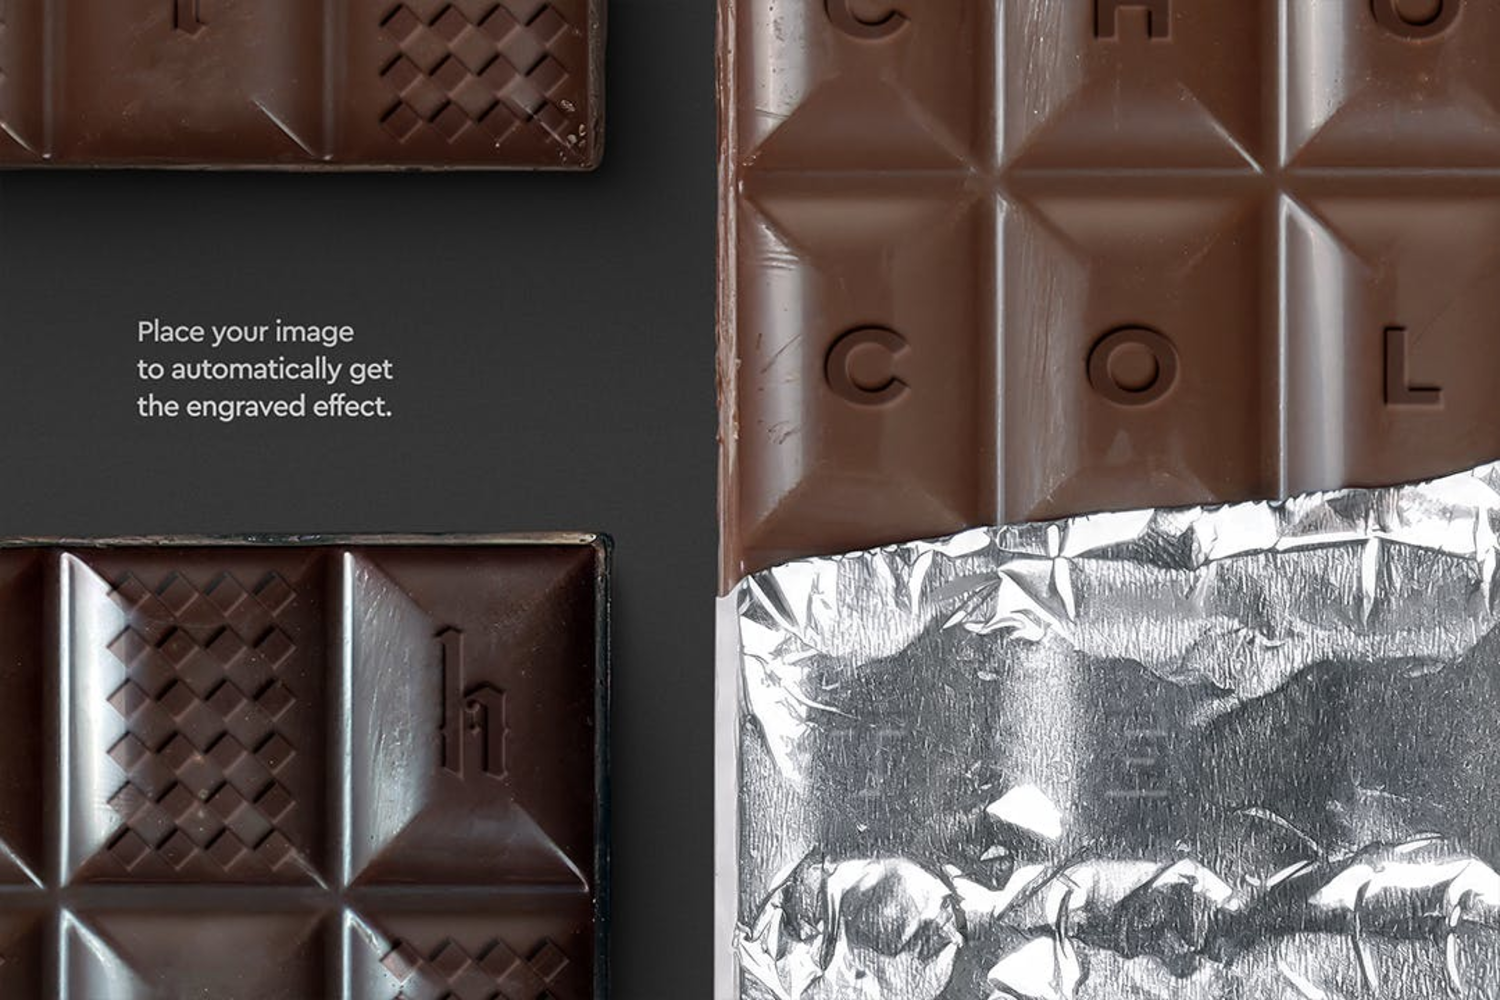 5711 巧克力棒样机包装-Chocolate-Bar-Mockup-Packaging